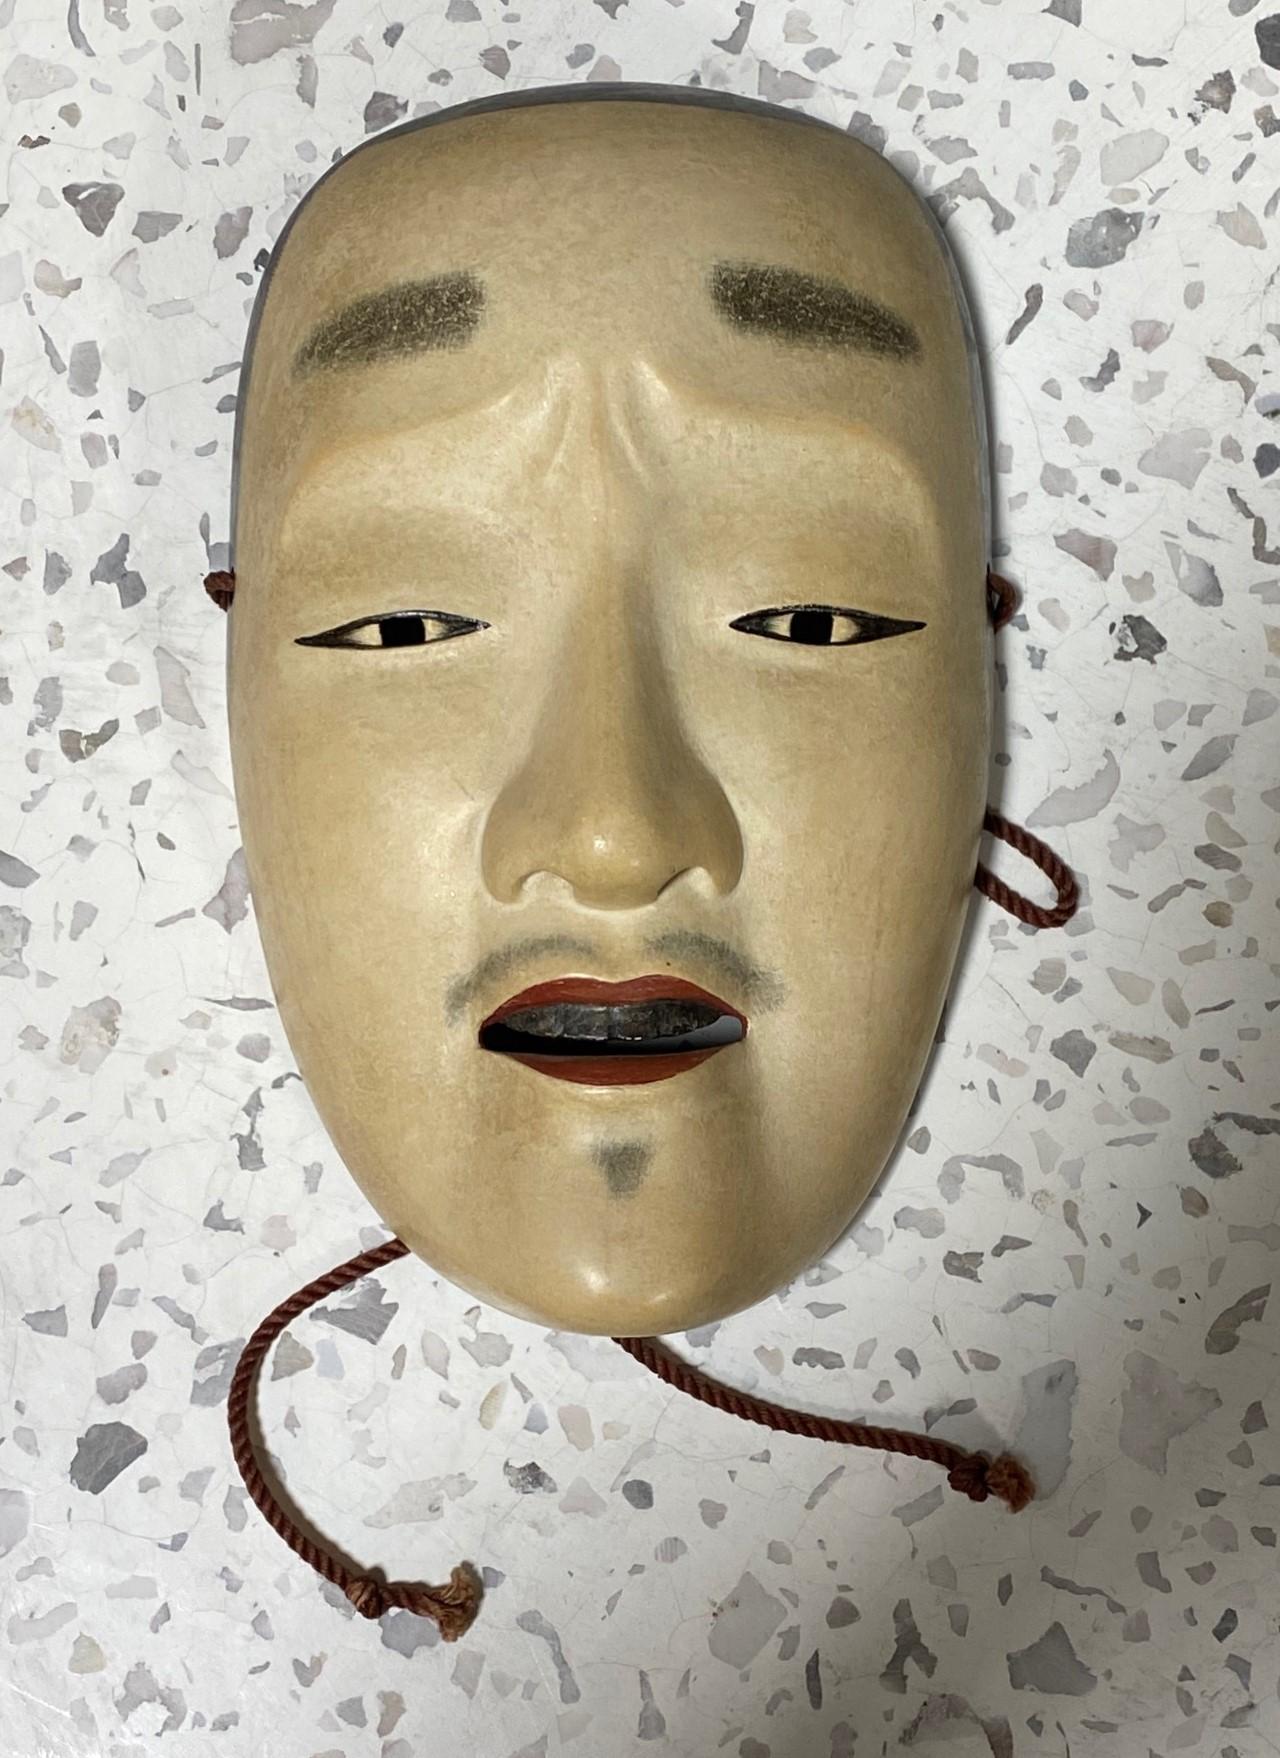 Eine wunderschöne, wunderbar gearbeitete, verführerische Maske, die für das japanische Noh-Theater hergestellt wurde.

Die Maske ist handgefertigt und handgeschnitzt aus Naturholz und ist auf der Rückseite vom Hersteller, der offensichtlich ein